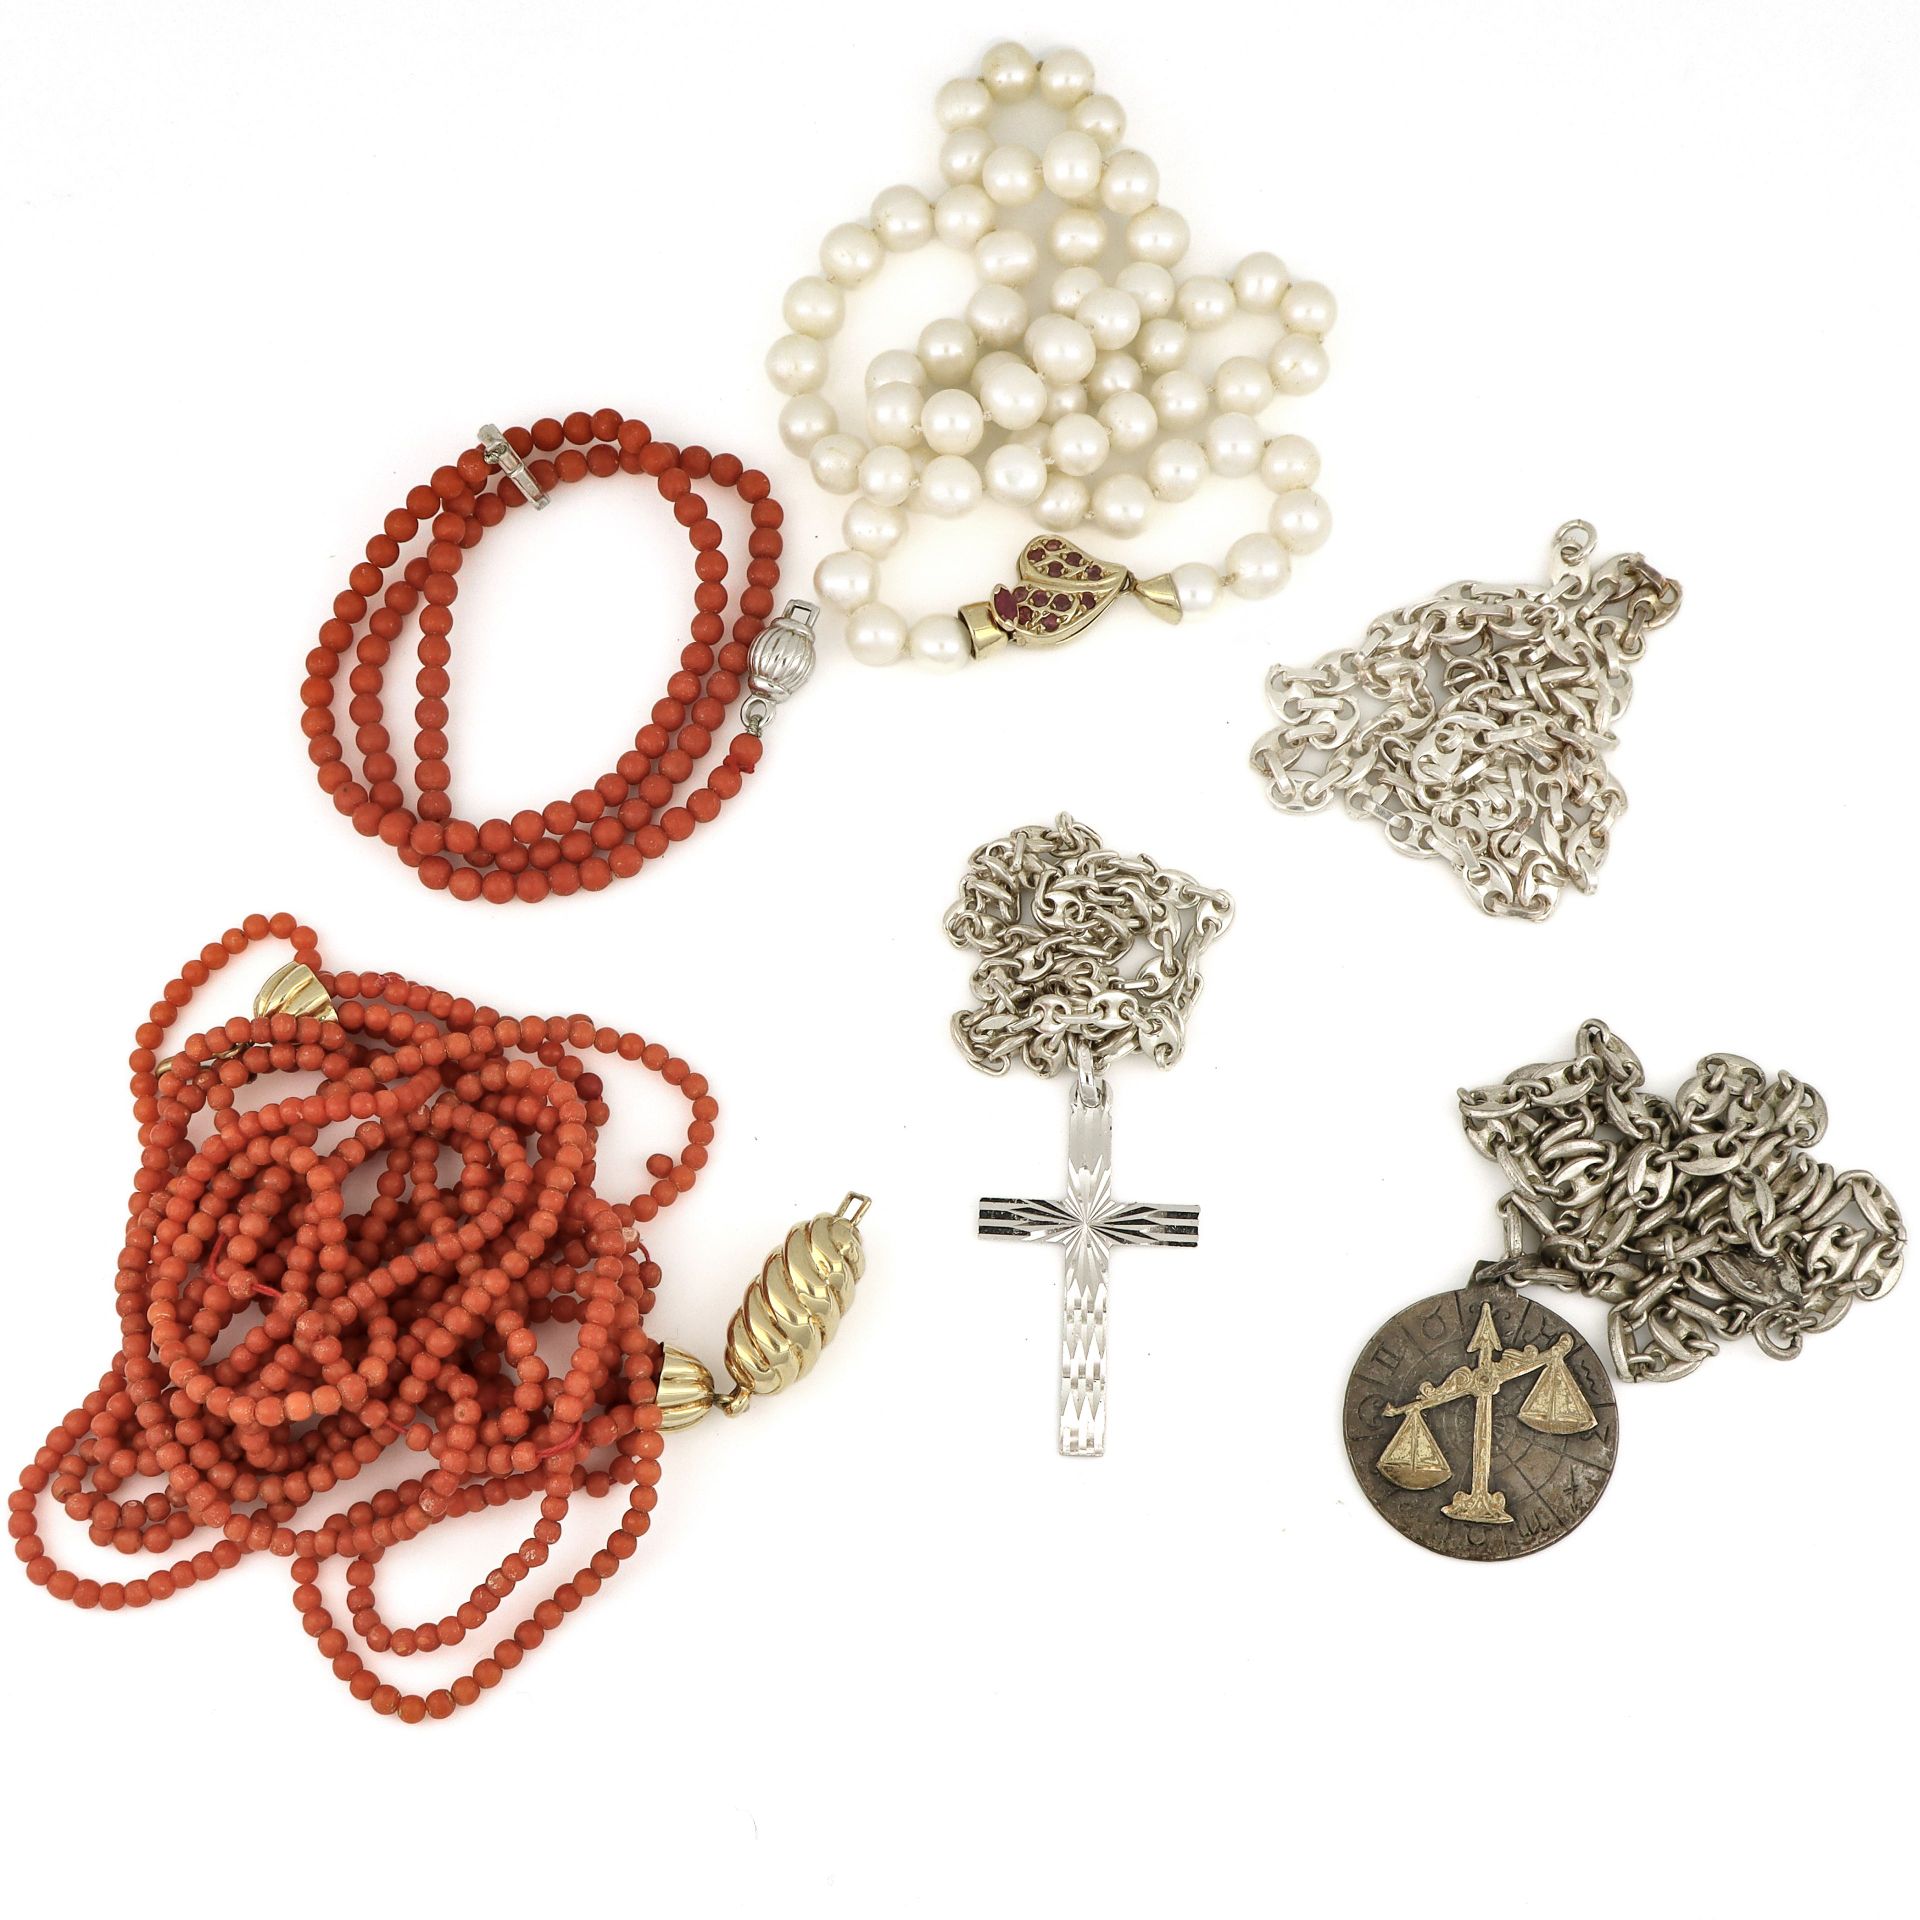 Null Lot bestehend aus 4 Halsketten mit Perlen, Korallen, Silber.